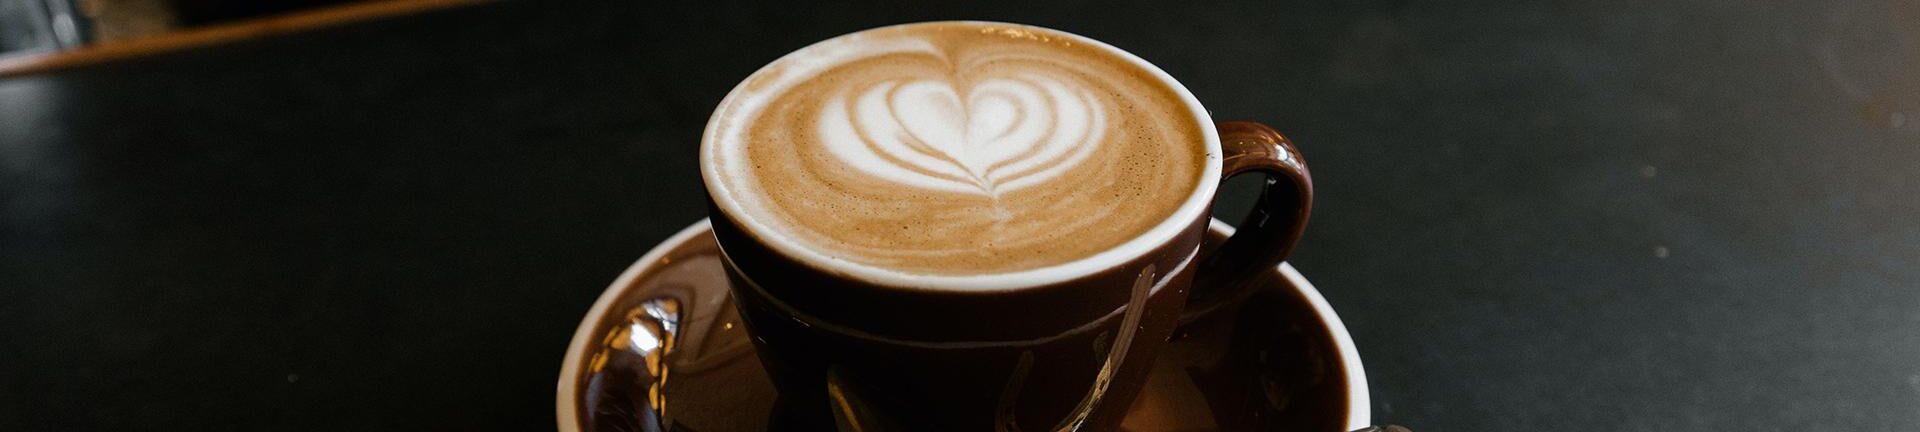 Eine Tasse Kaffee mit einem Herz Muster aus Milchschaum auf einem Tresen.